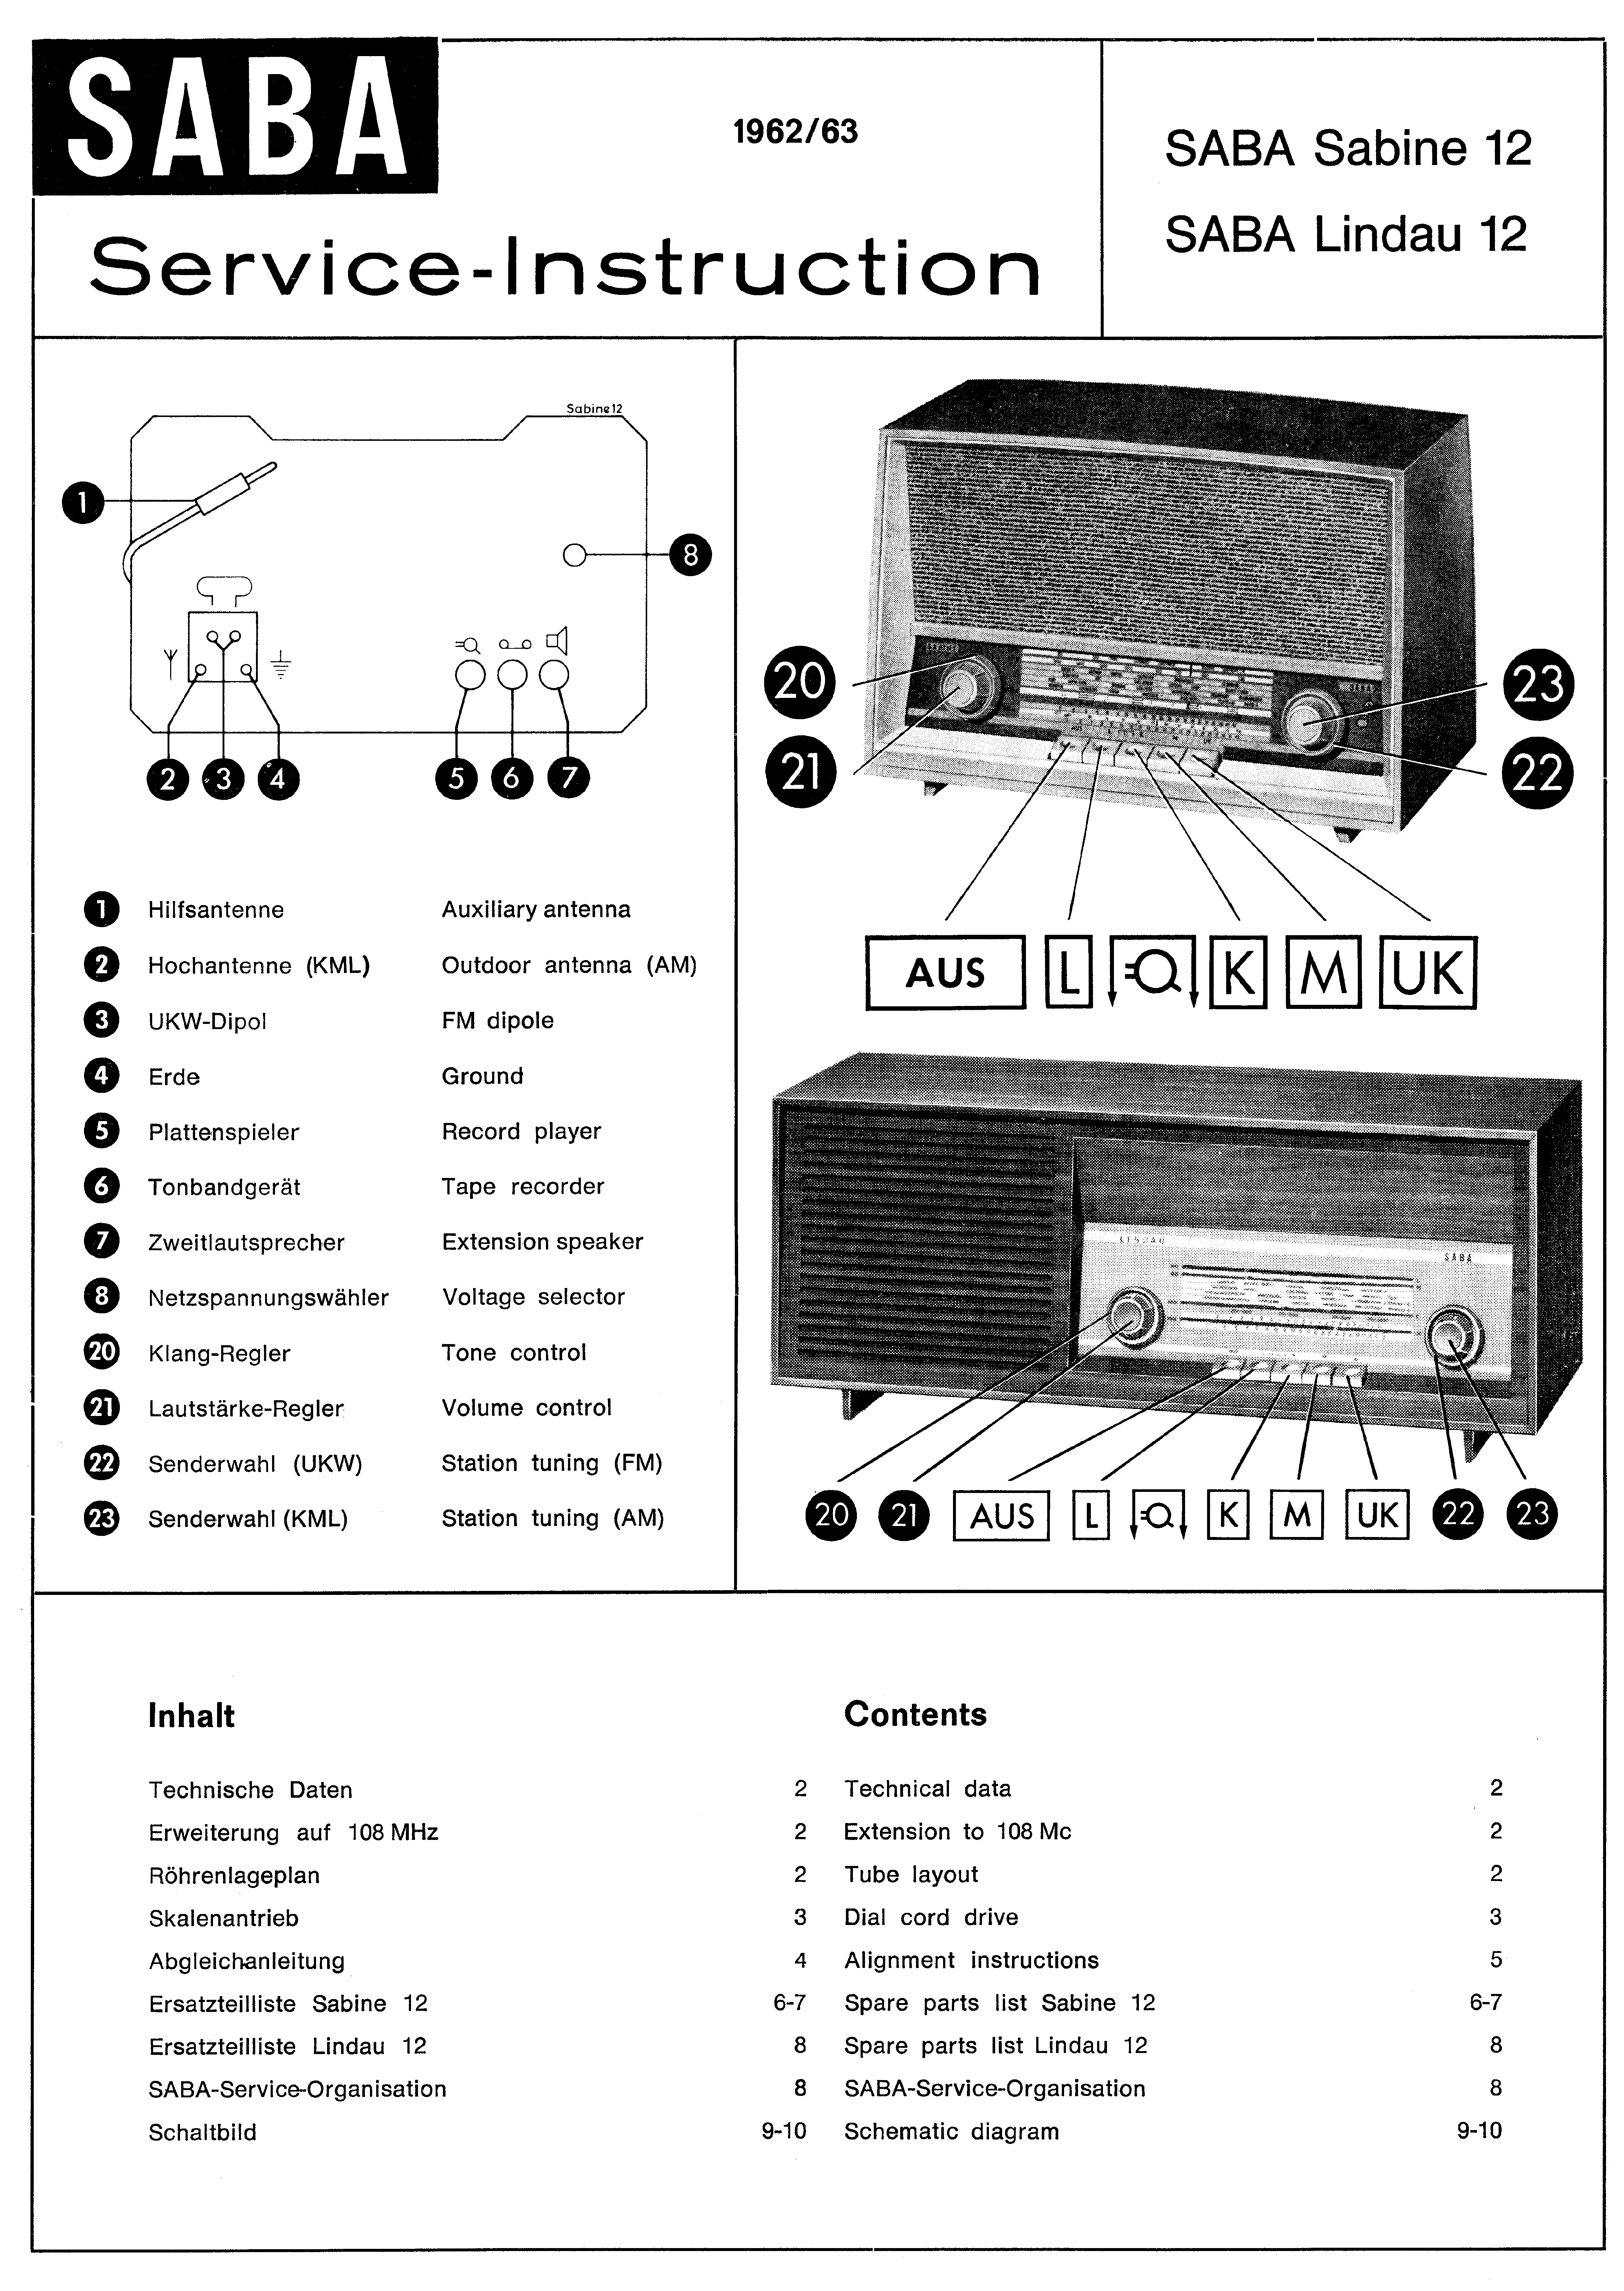 Service Manual-Anleitung für Saba Stereo-Rundfunk-Einsatz 14 